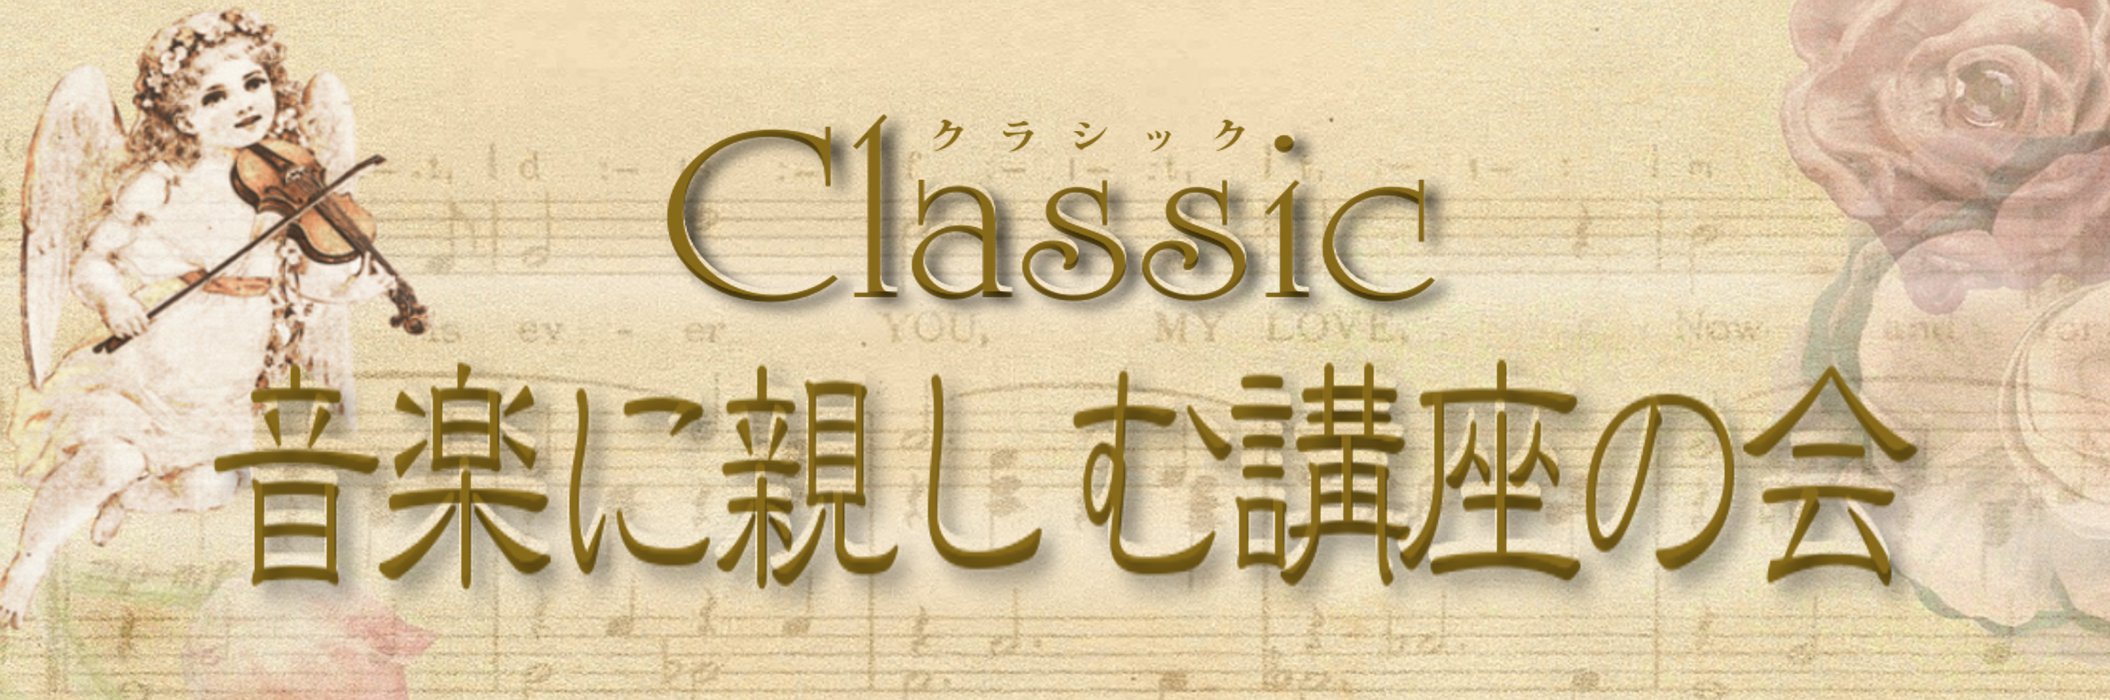 ＜Classic8＞クラシック音楽に親しむ講座の会